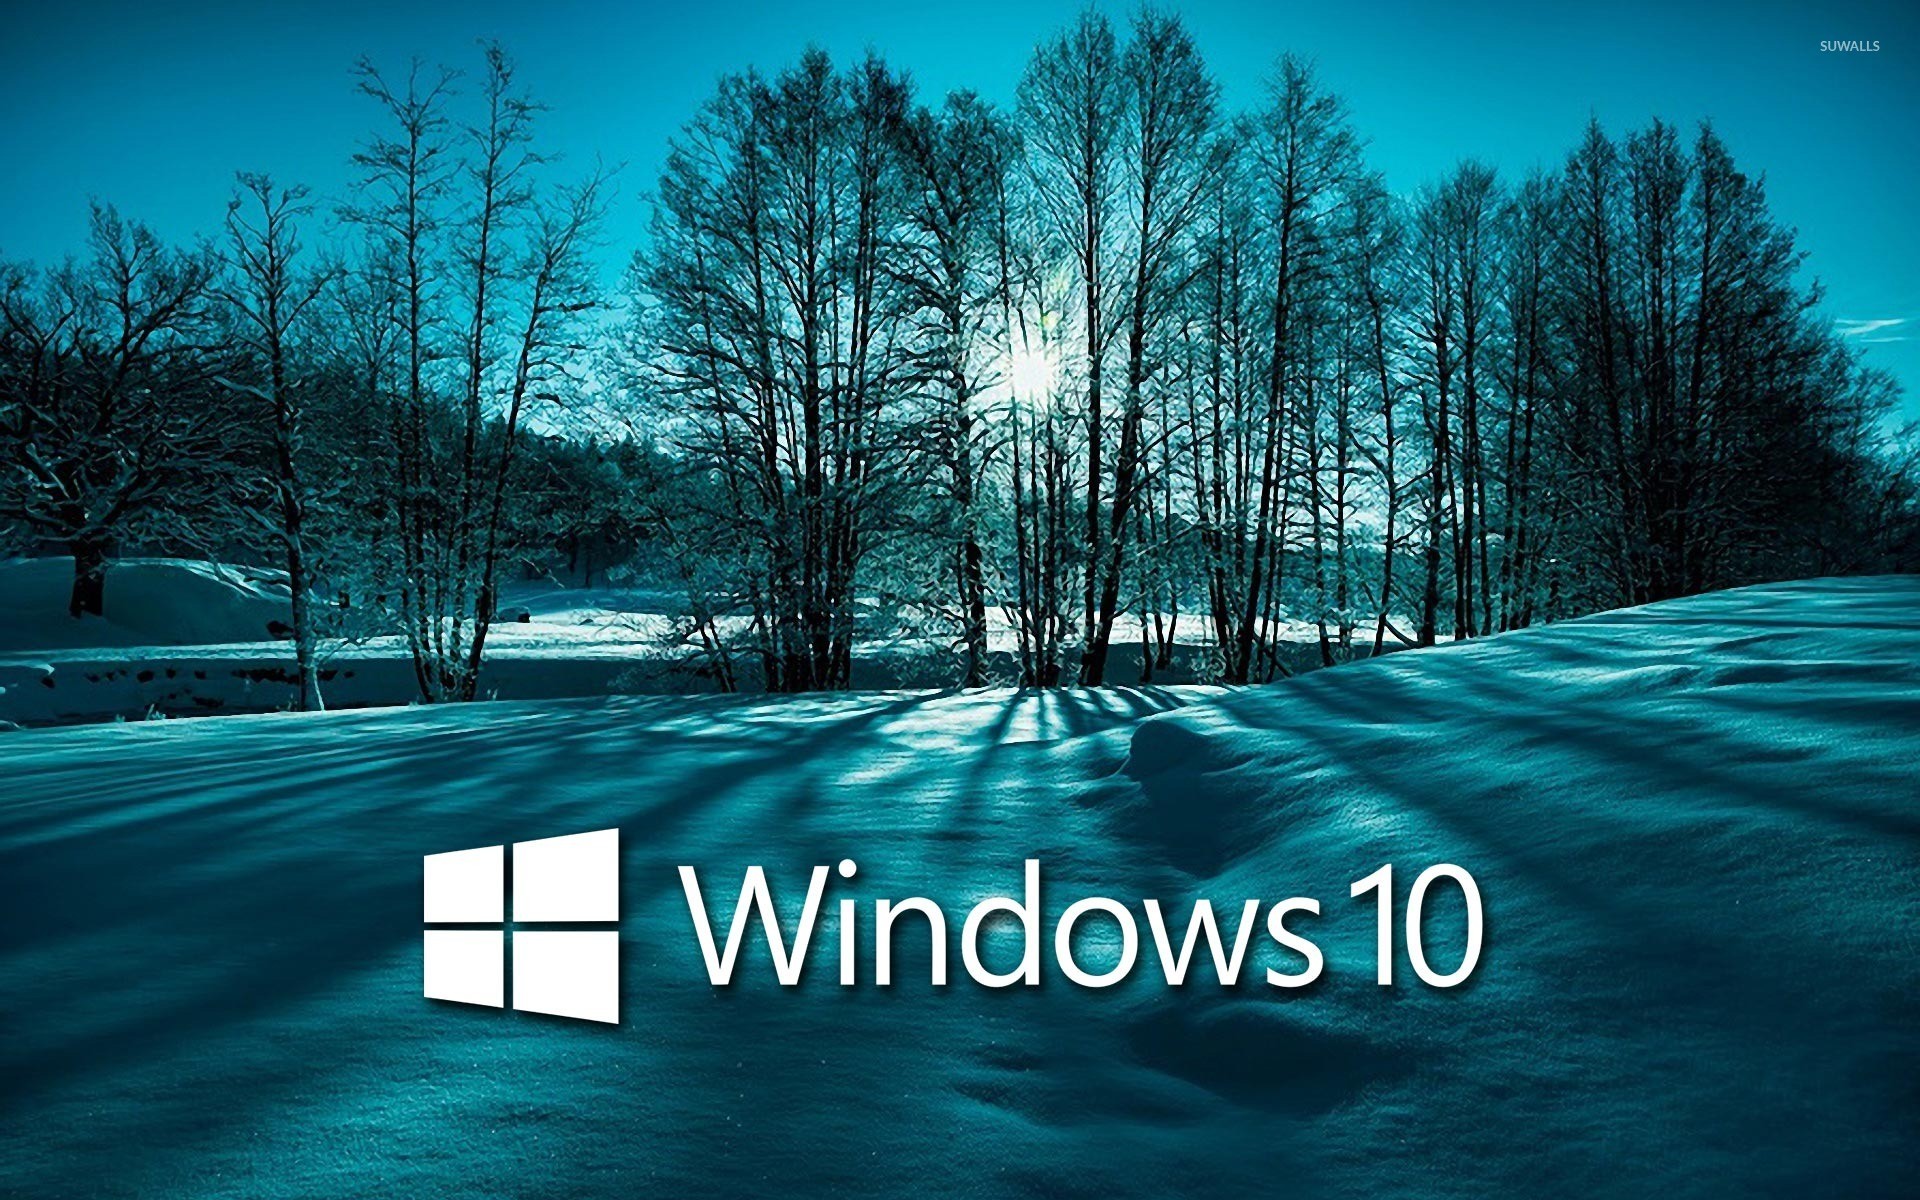 windows 10 pro image file free download